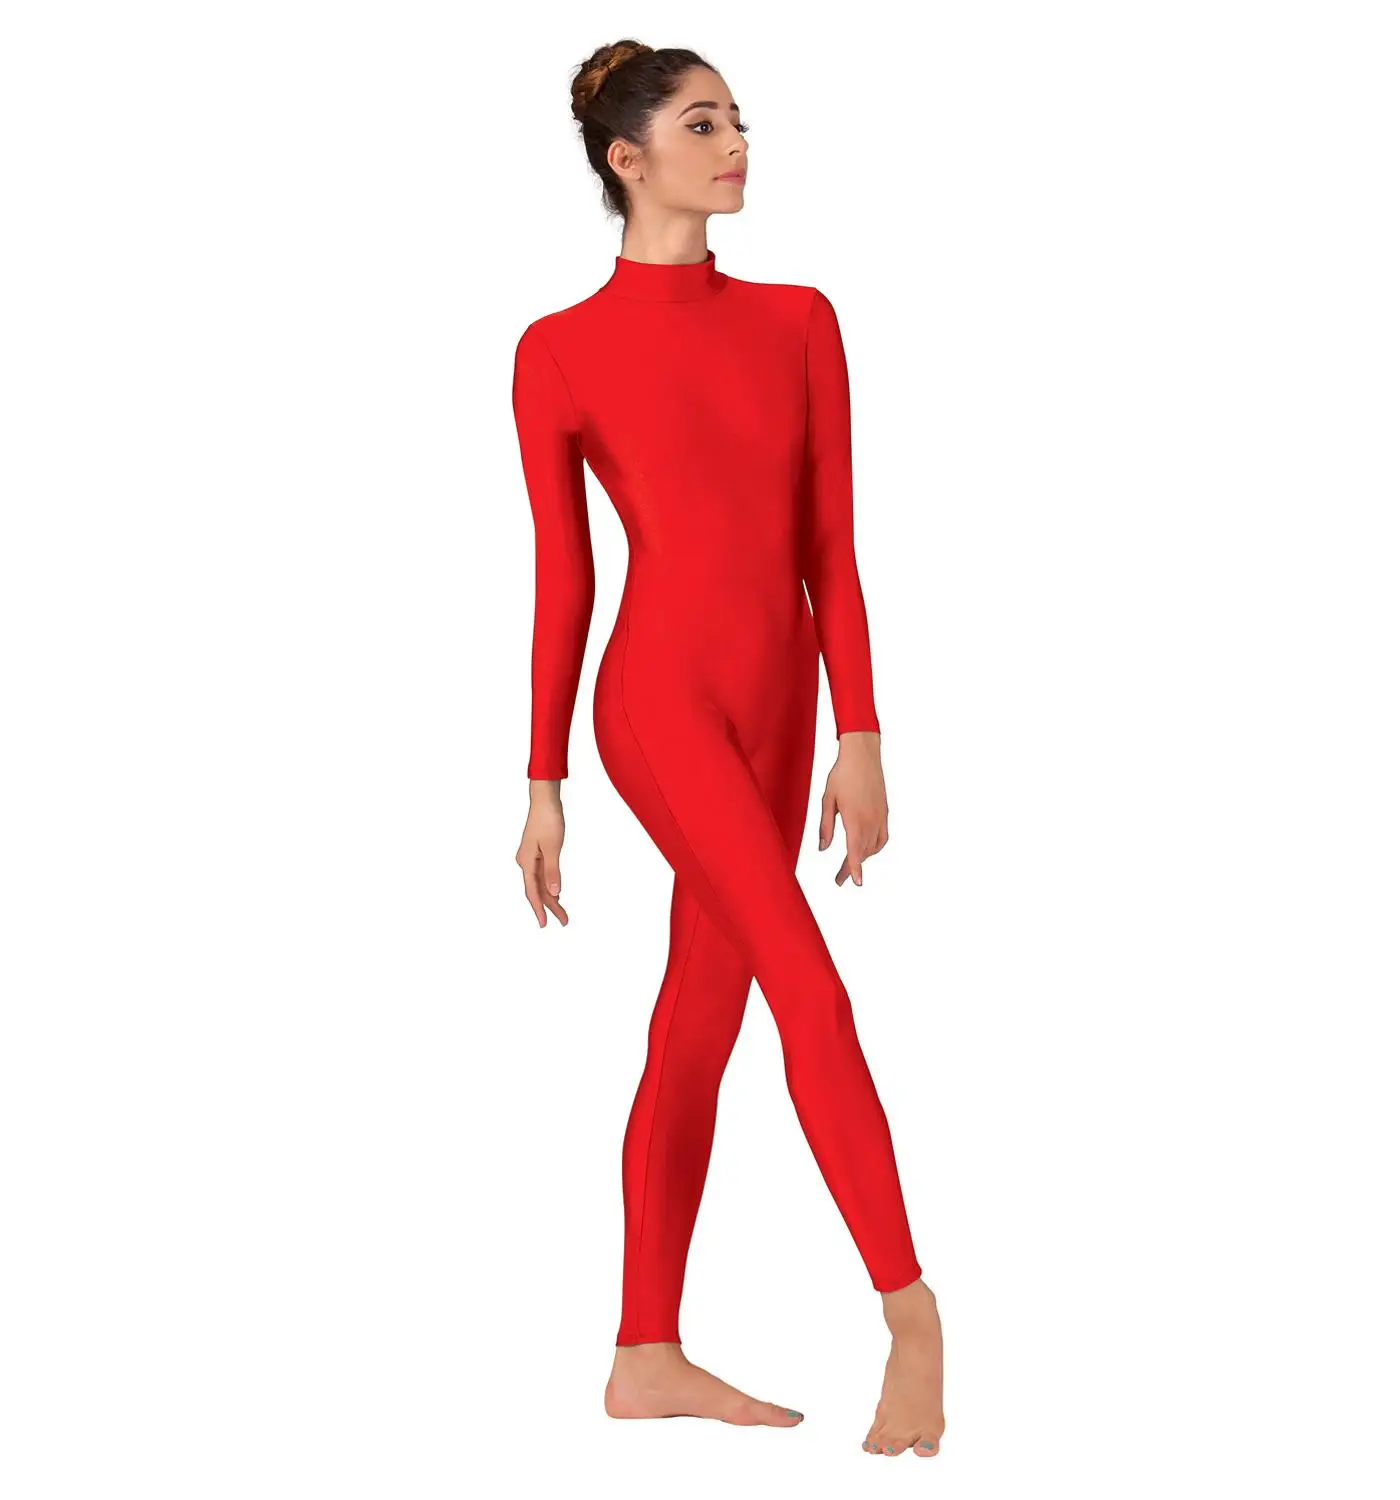 Мужская Одежда для танцев для взрослых, Одежда для танцев, черная, с длинным рукавом, на молнии, одежда для занятий гимнастикой, боди из лайкры и спандекса, костюмы Zentai - Цвет: Red